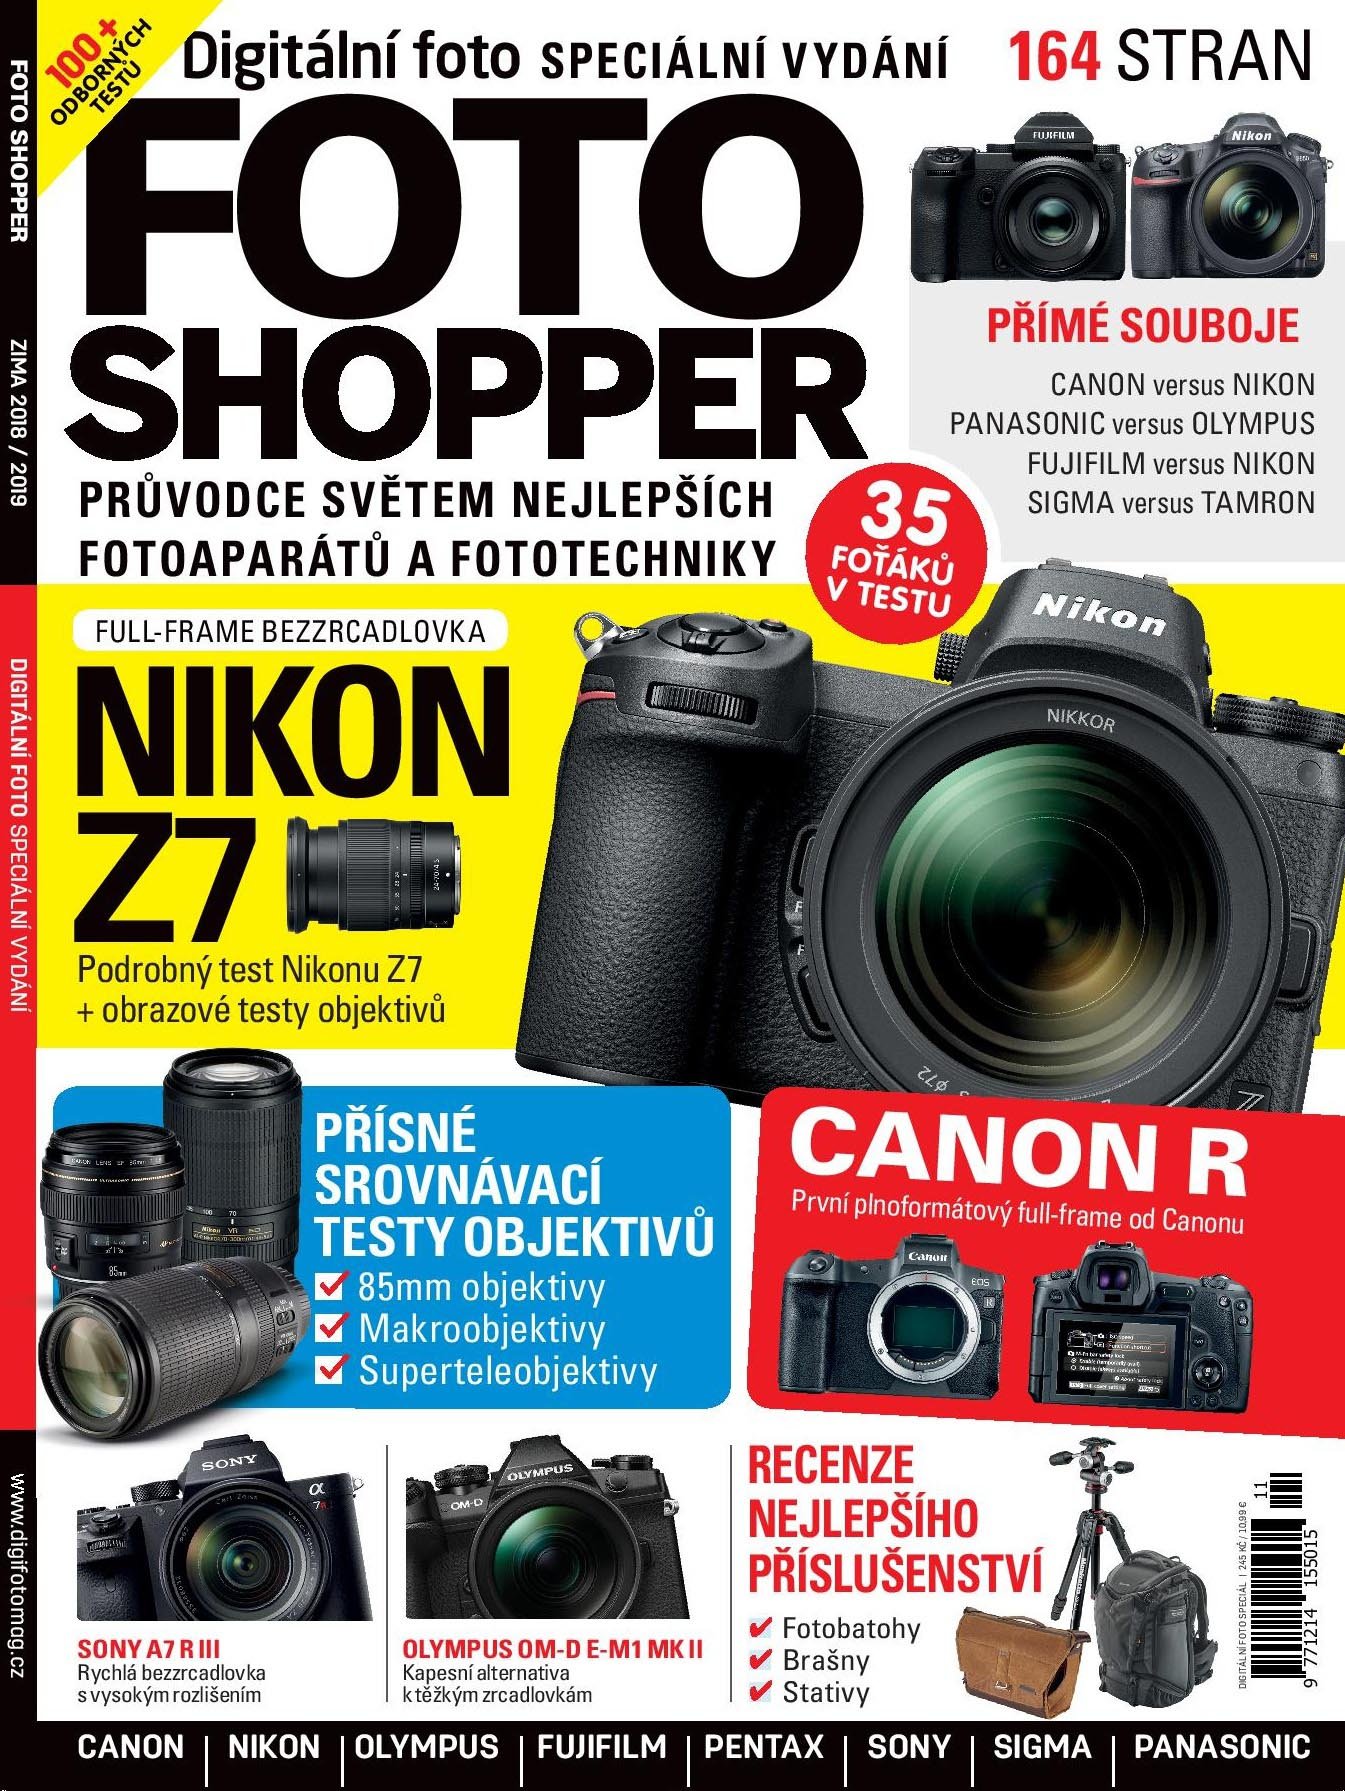 FOTO SHOPPER – digitální foto speciální vydání - Tvůrci časopisu Digitální foto